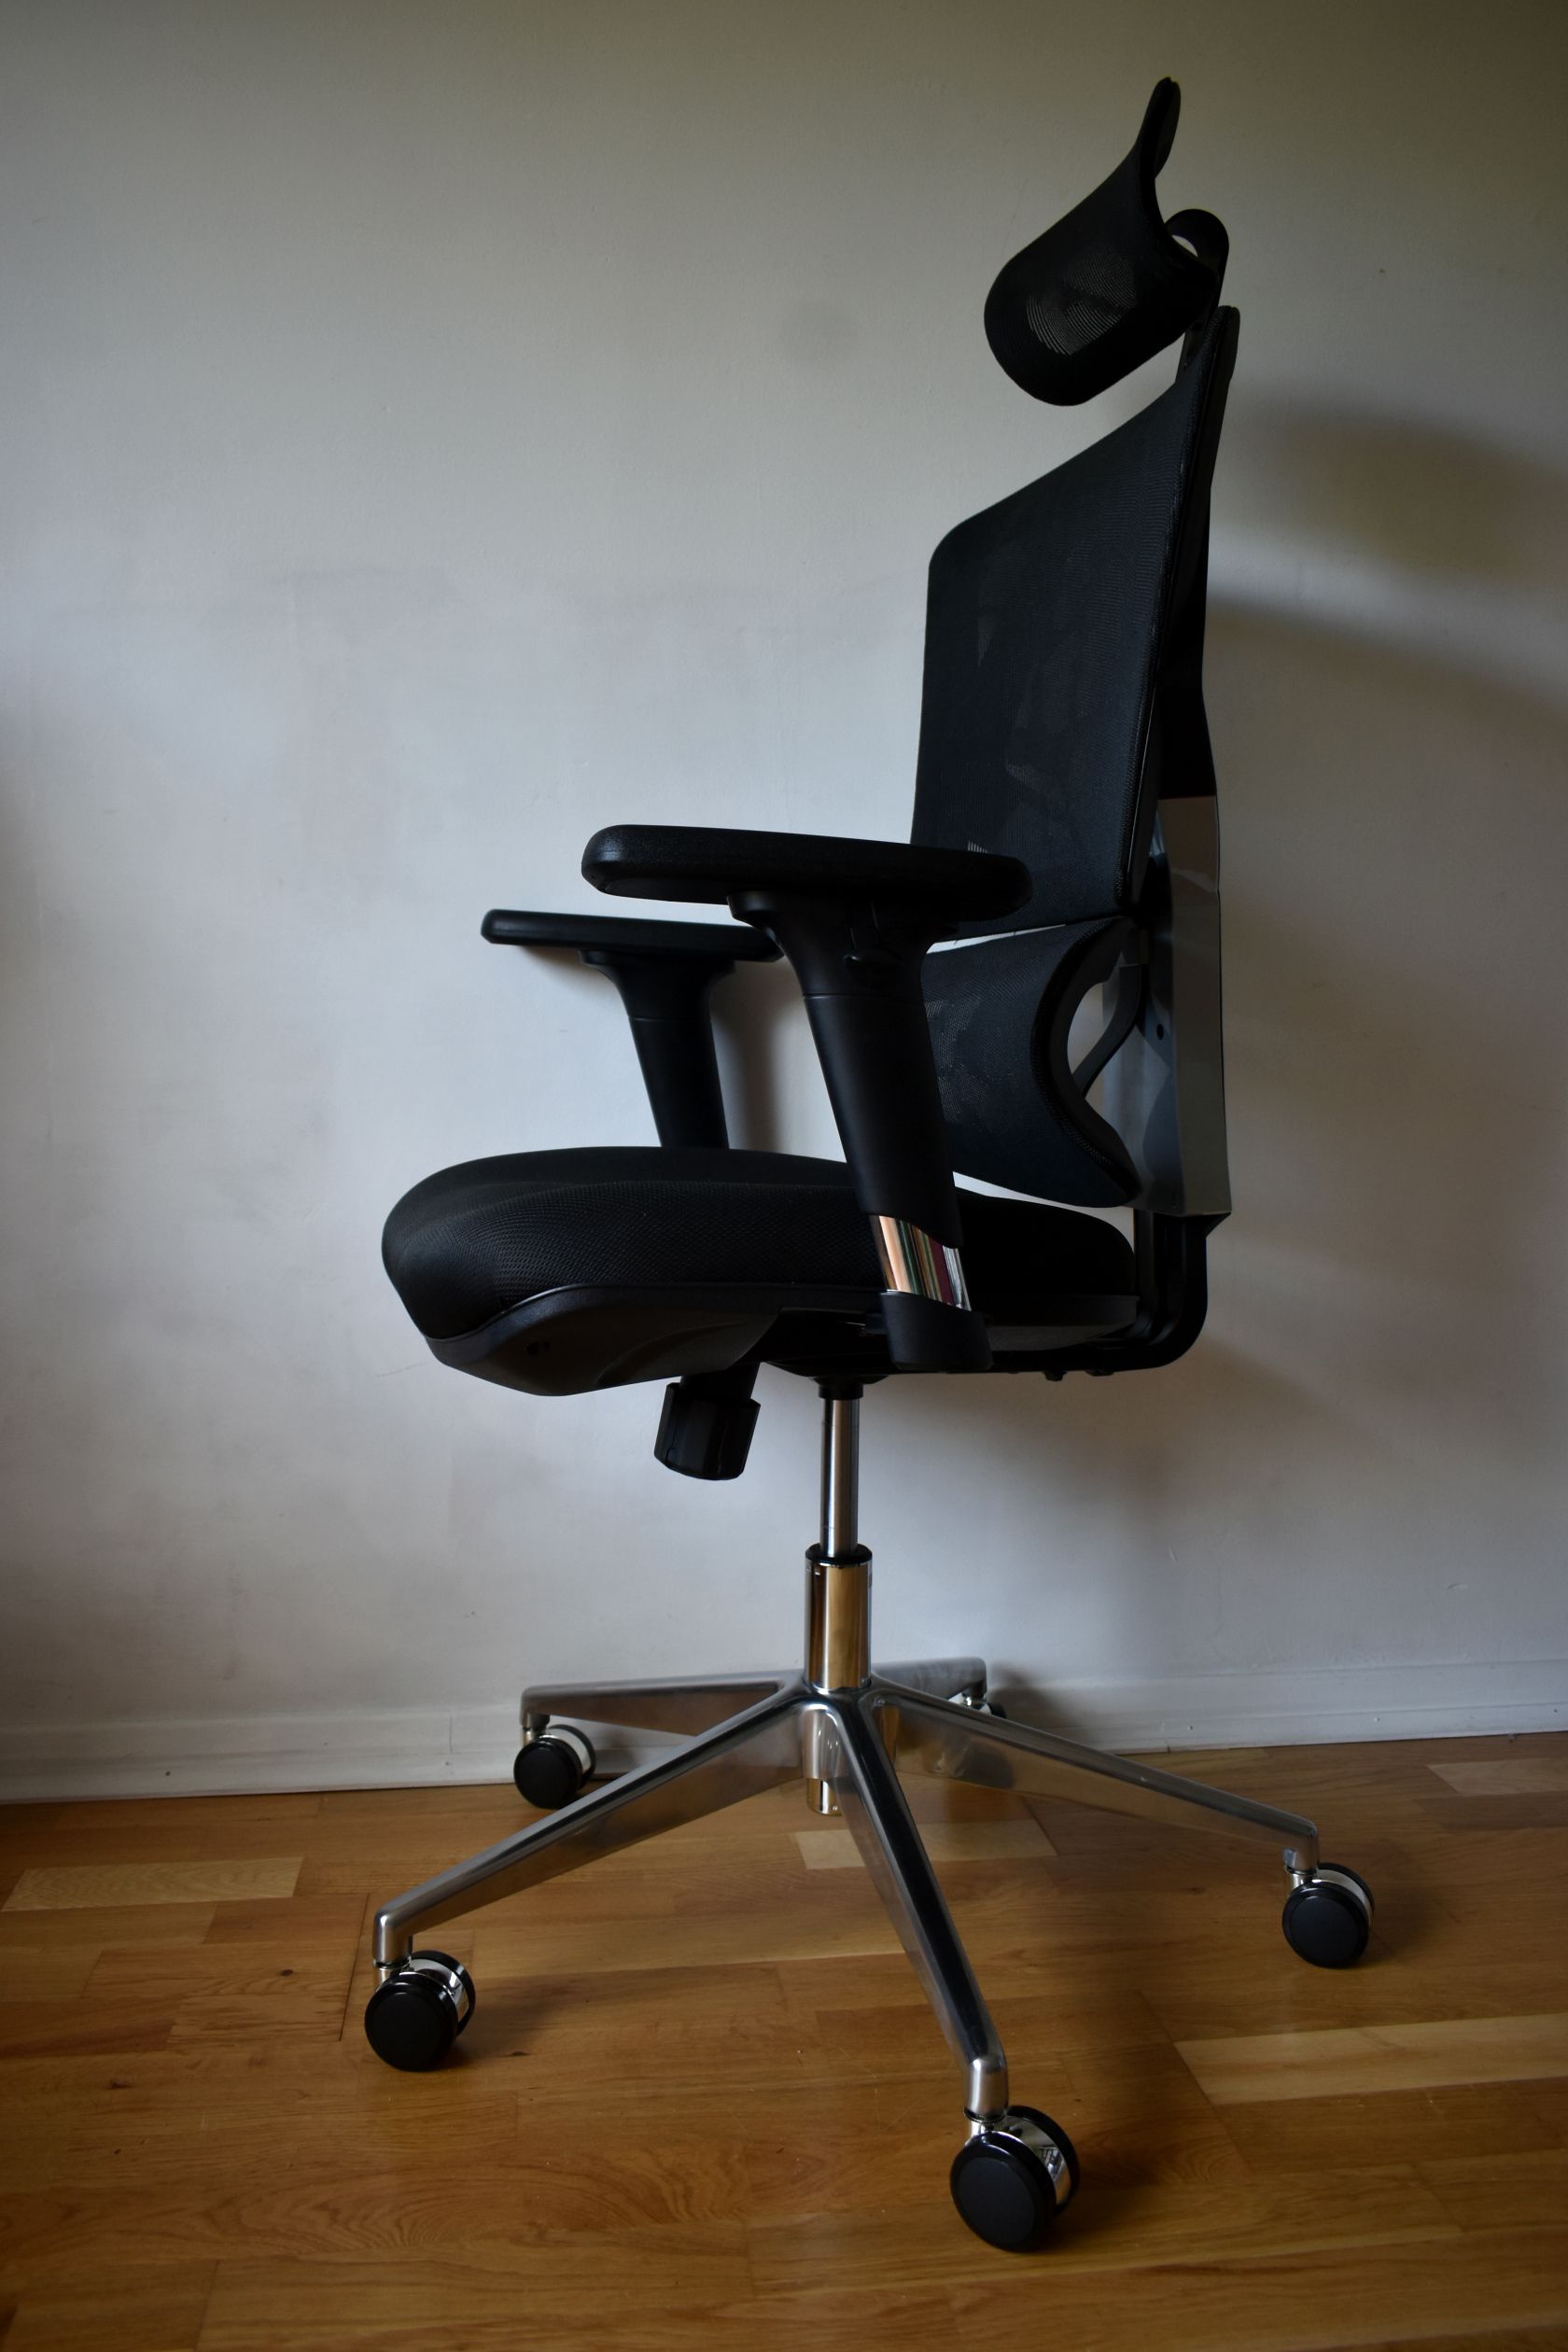 Sihoo M90D sedia ergonomica da ufficio traspirante e con supporto